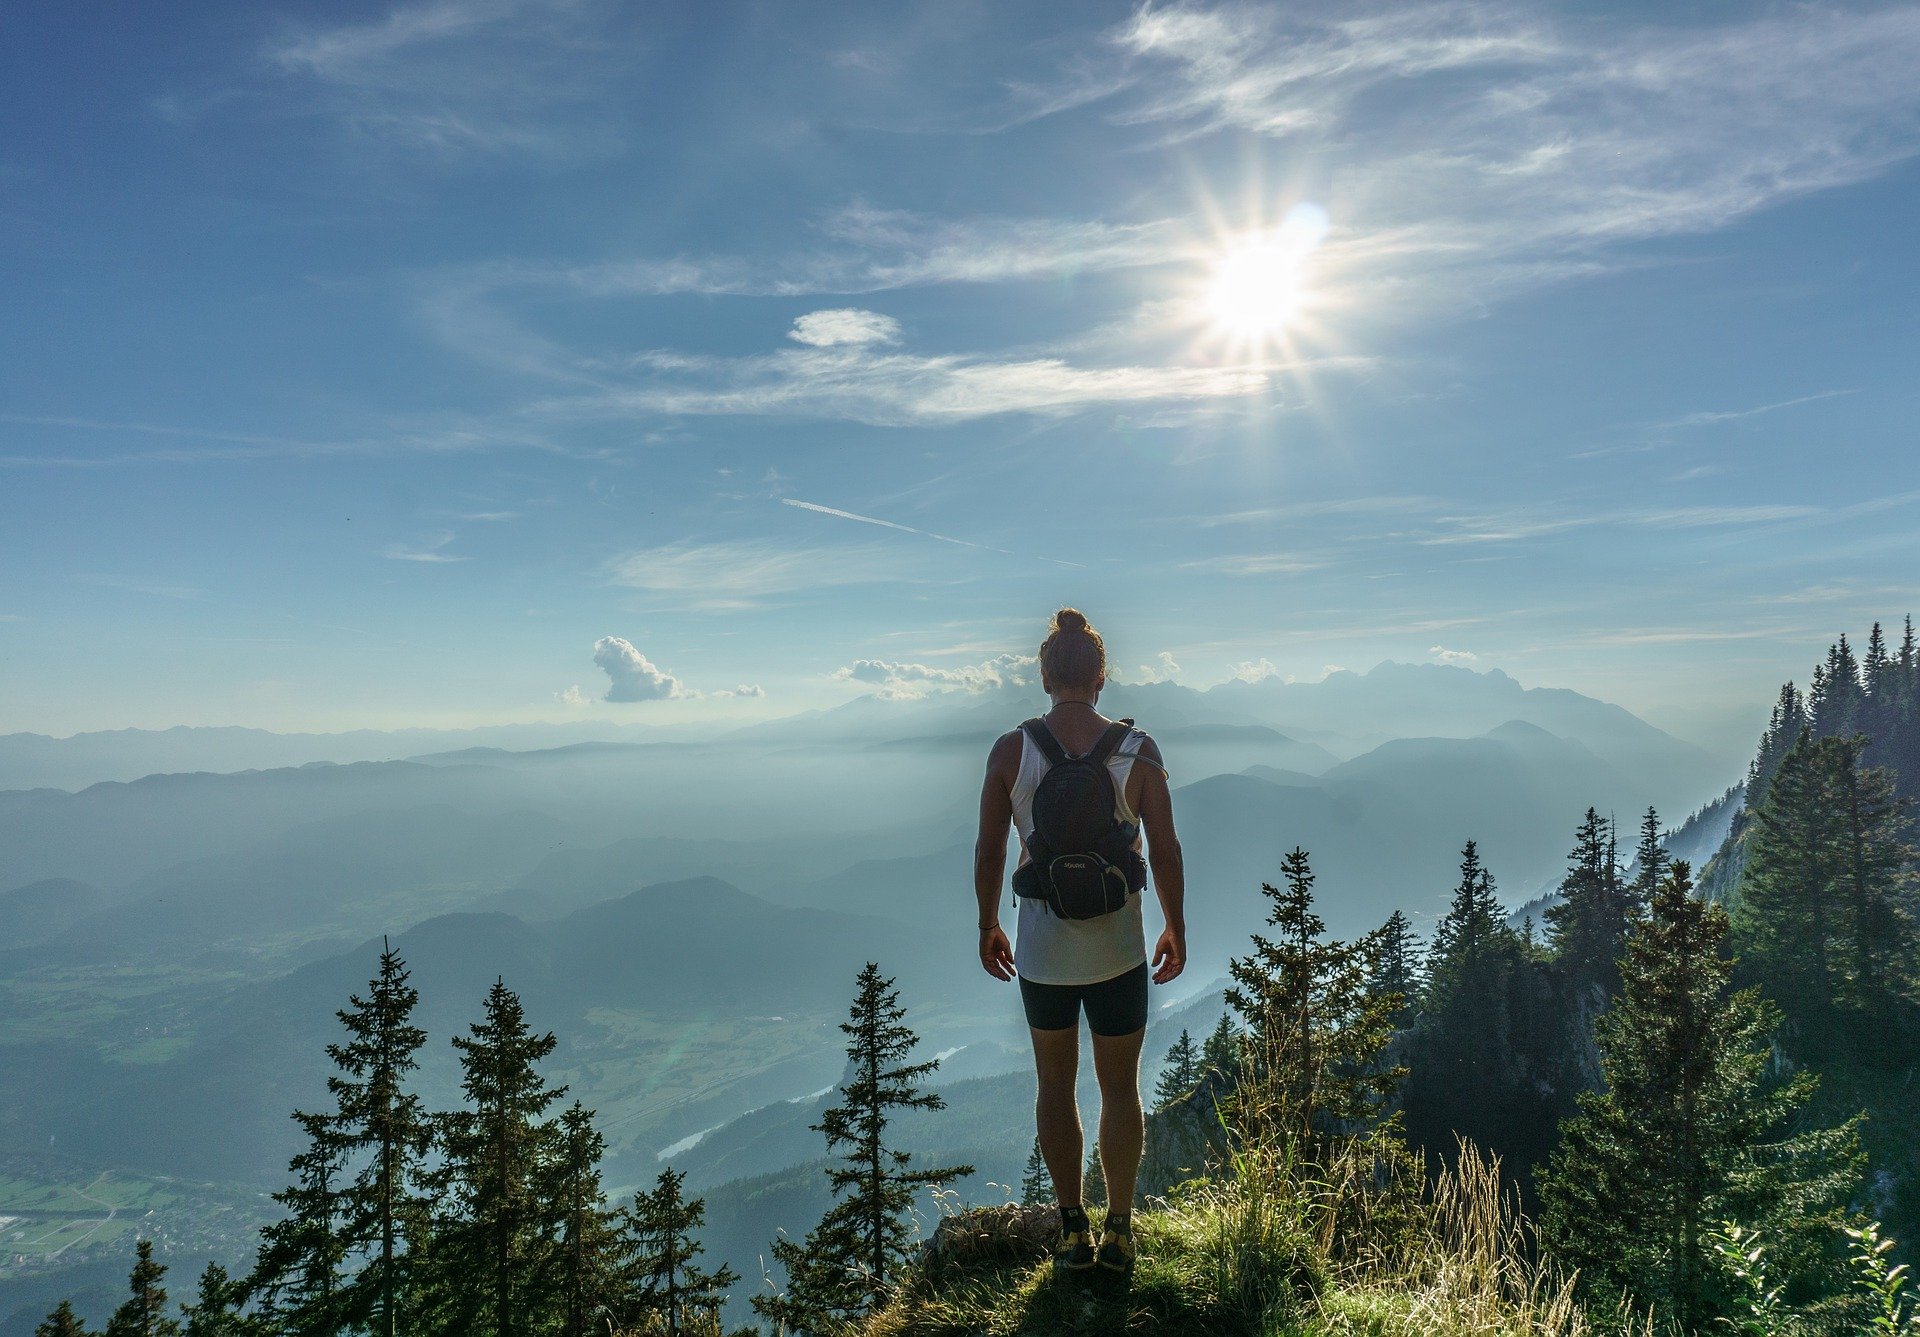 Foto de uma mulher no alto de uma montanha observando o céu e outras montanhas